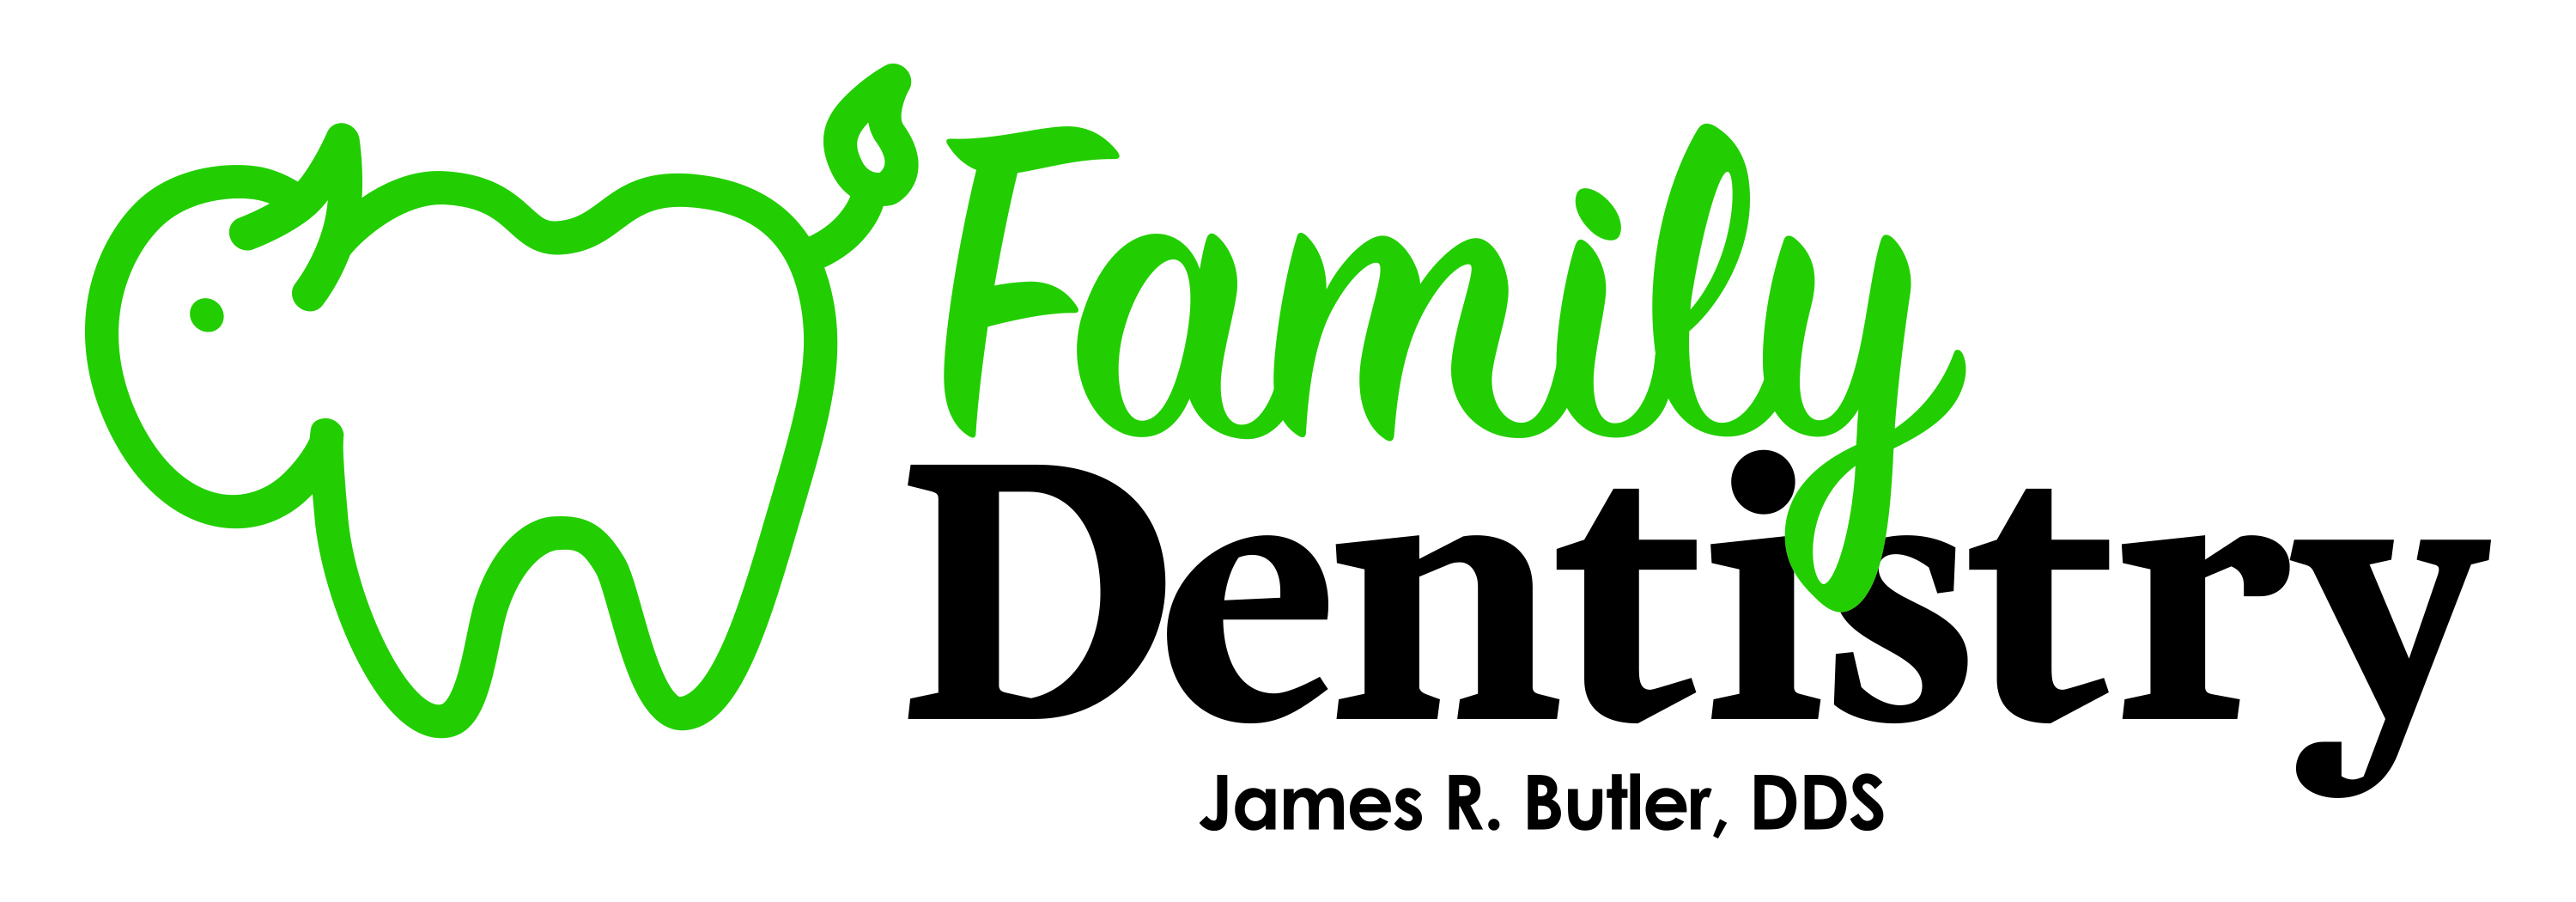 Dr. Butler Family Dentistry LOGO - Dr. James R. Buter